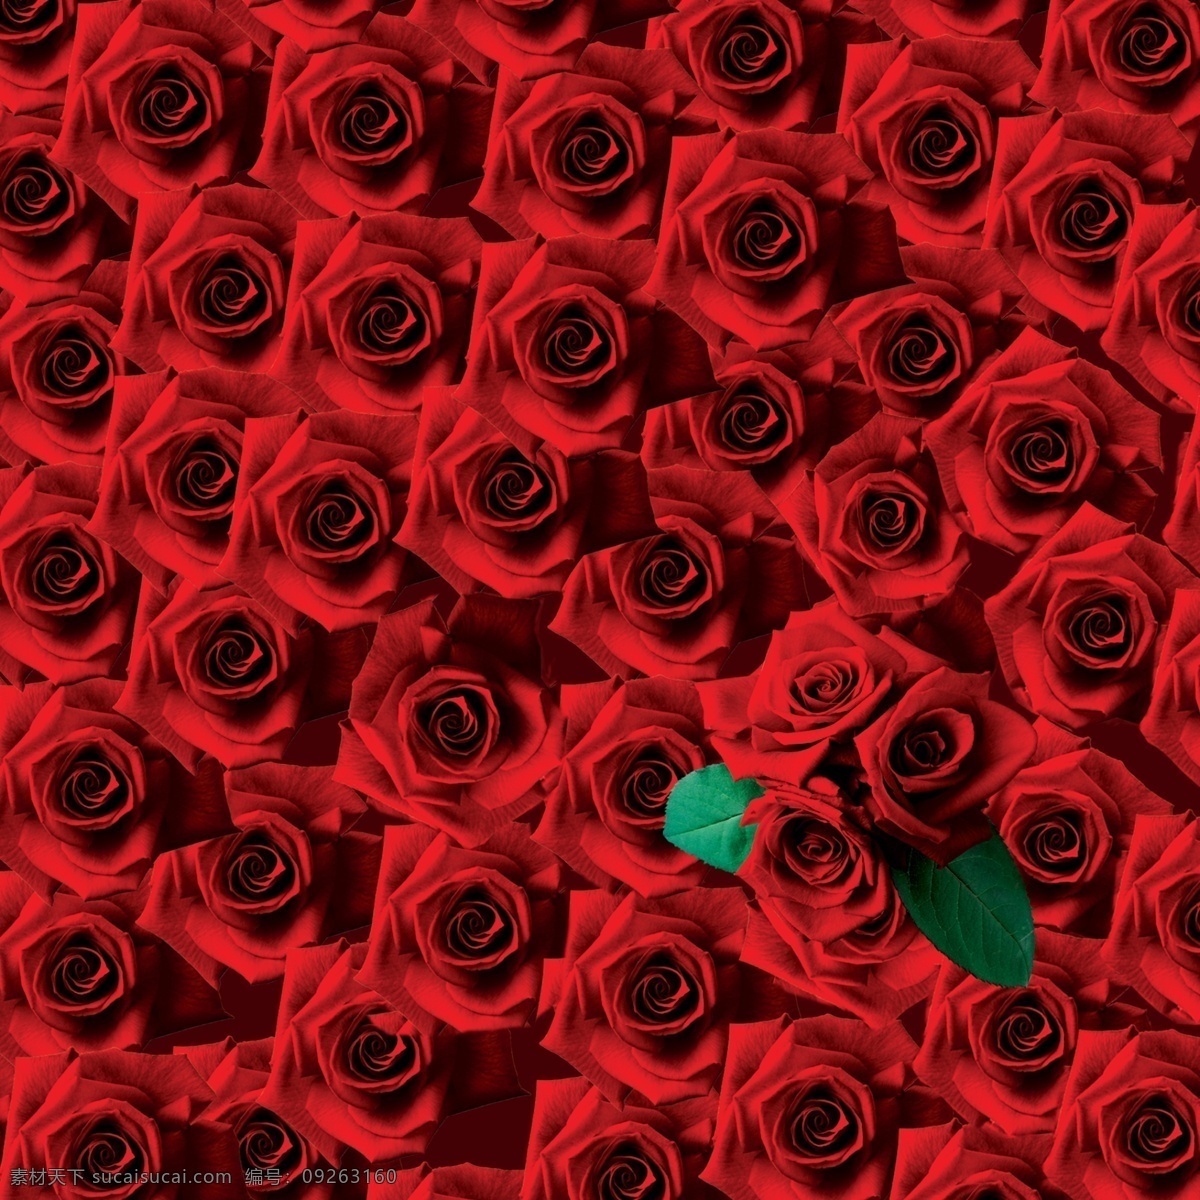 玫瑰花图片 玫瑰花素材 玫瑰花模板 玫瑰花背景 玫瑰花 花朵 情人节玫瑰花 多色玫瑰花 红色玫瑰 粉红玫瑰 分层